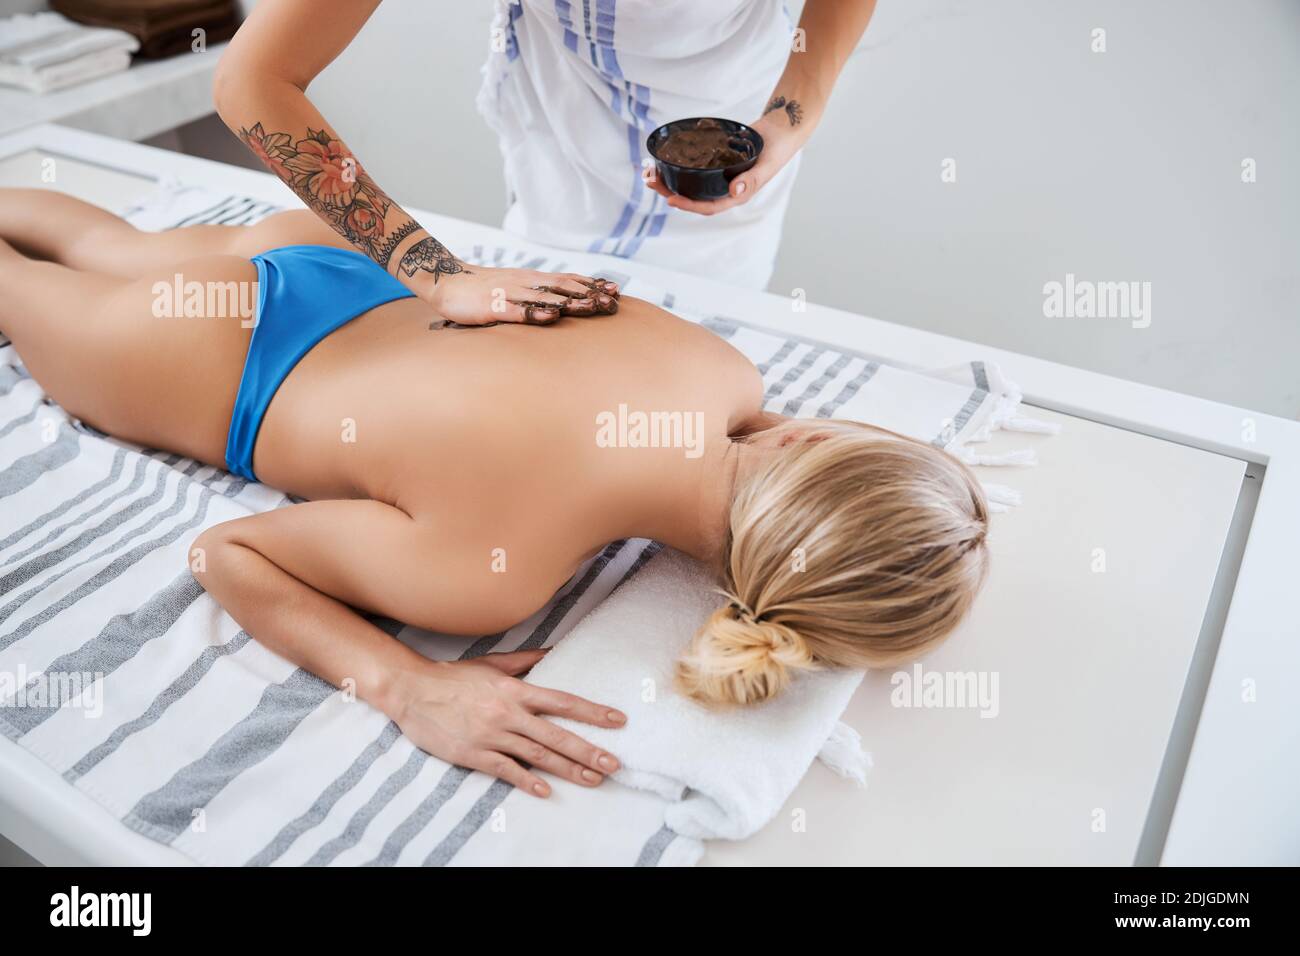 Bikini Massage